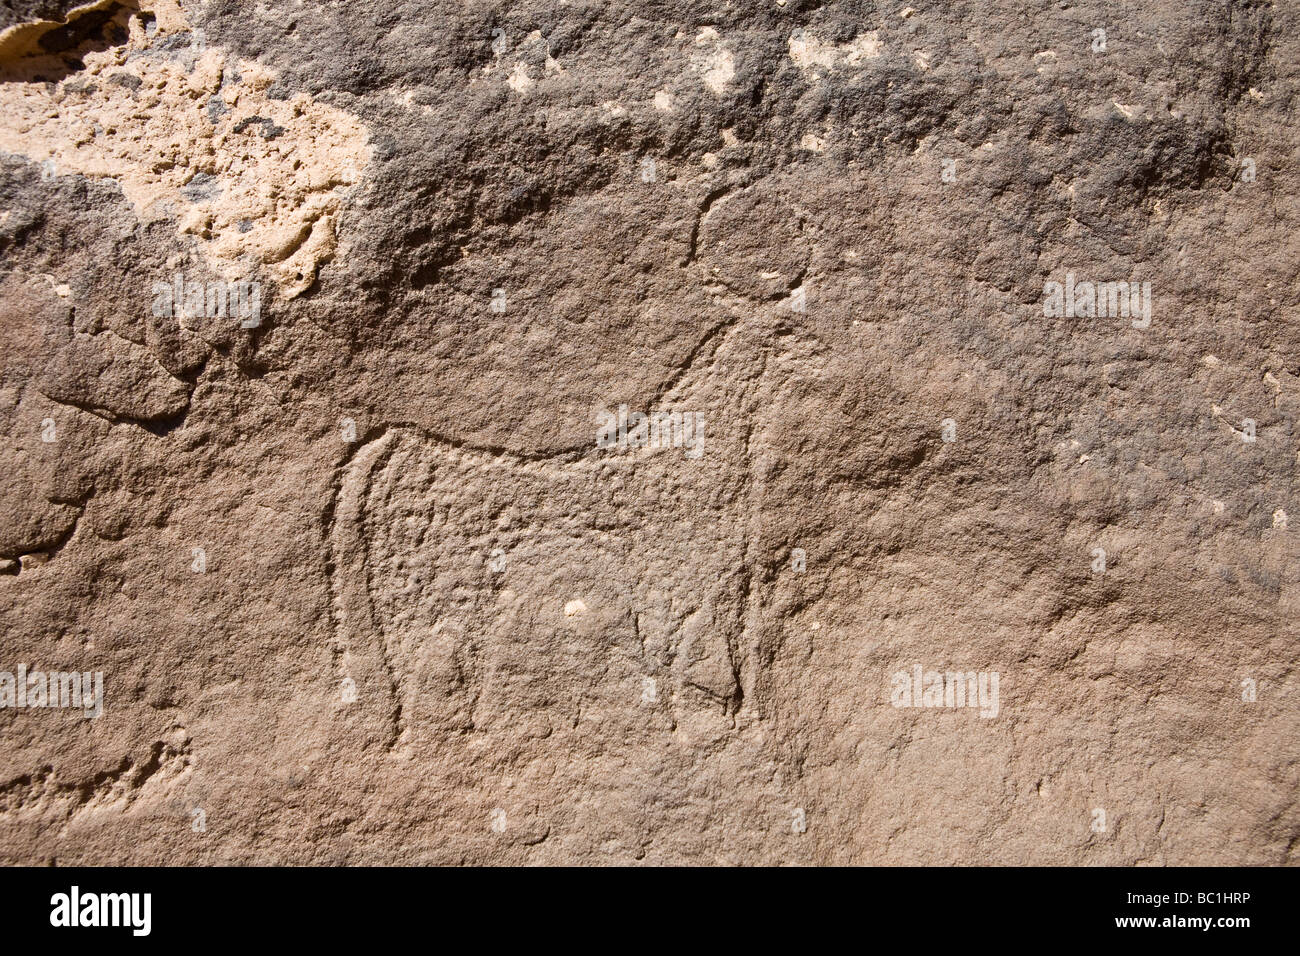 Rock-art  of horned cattle in the Eastern Desert of Egypt, North Africa Stock Photo